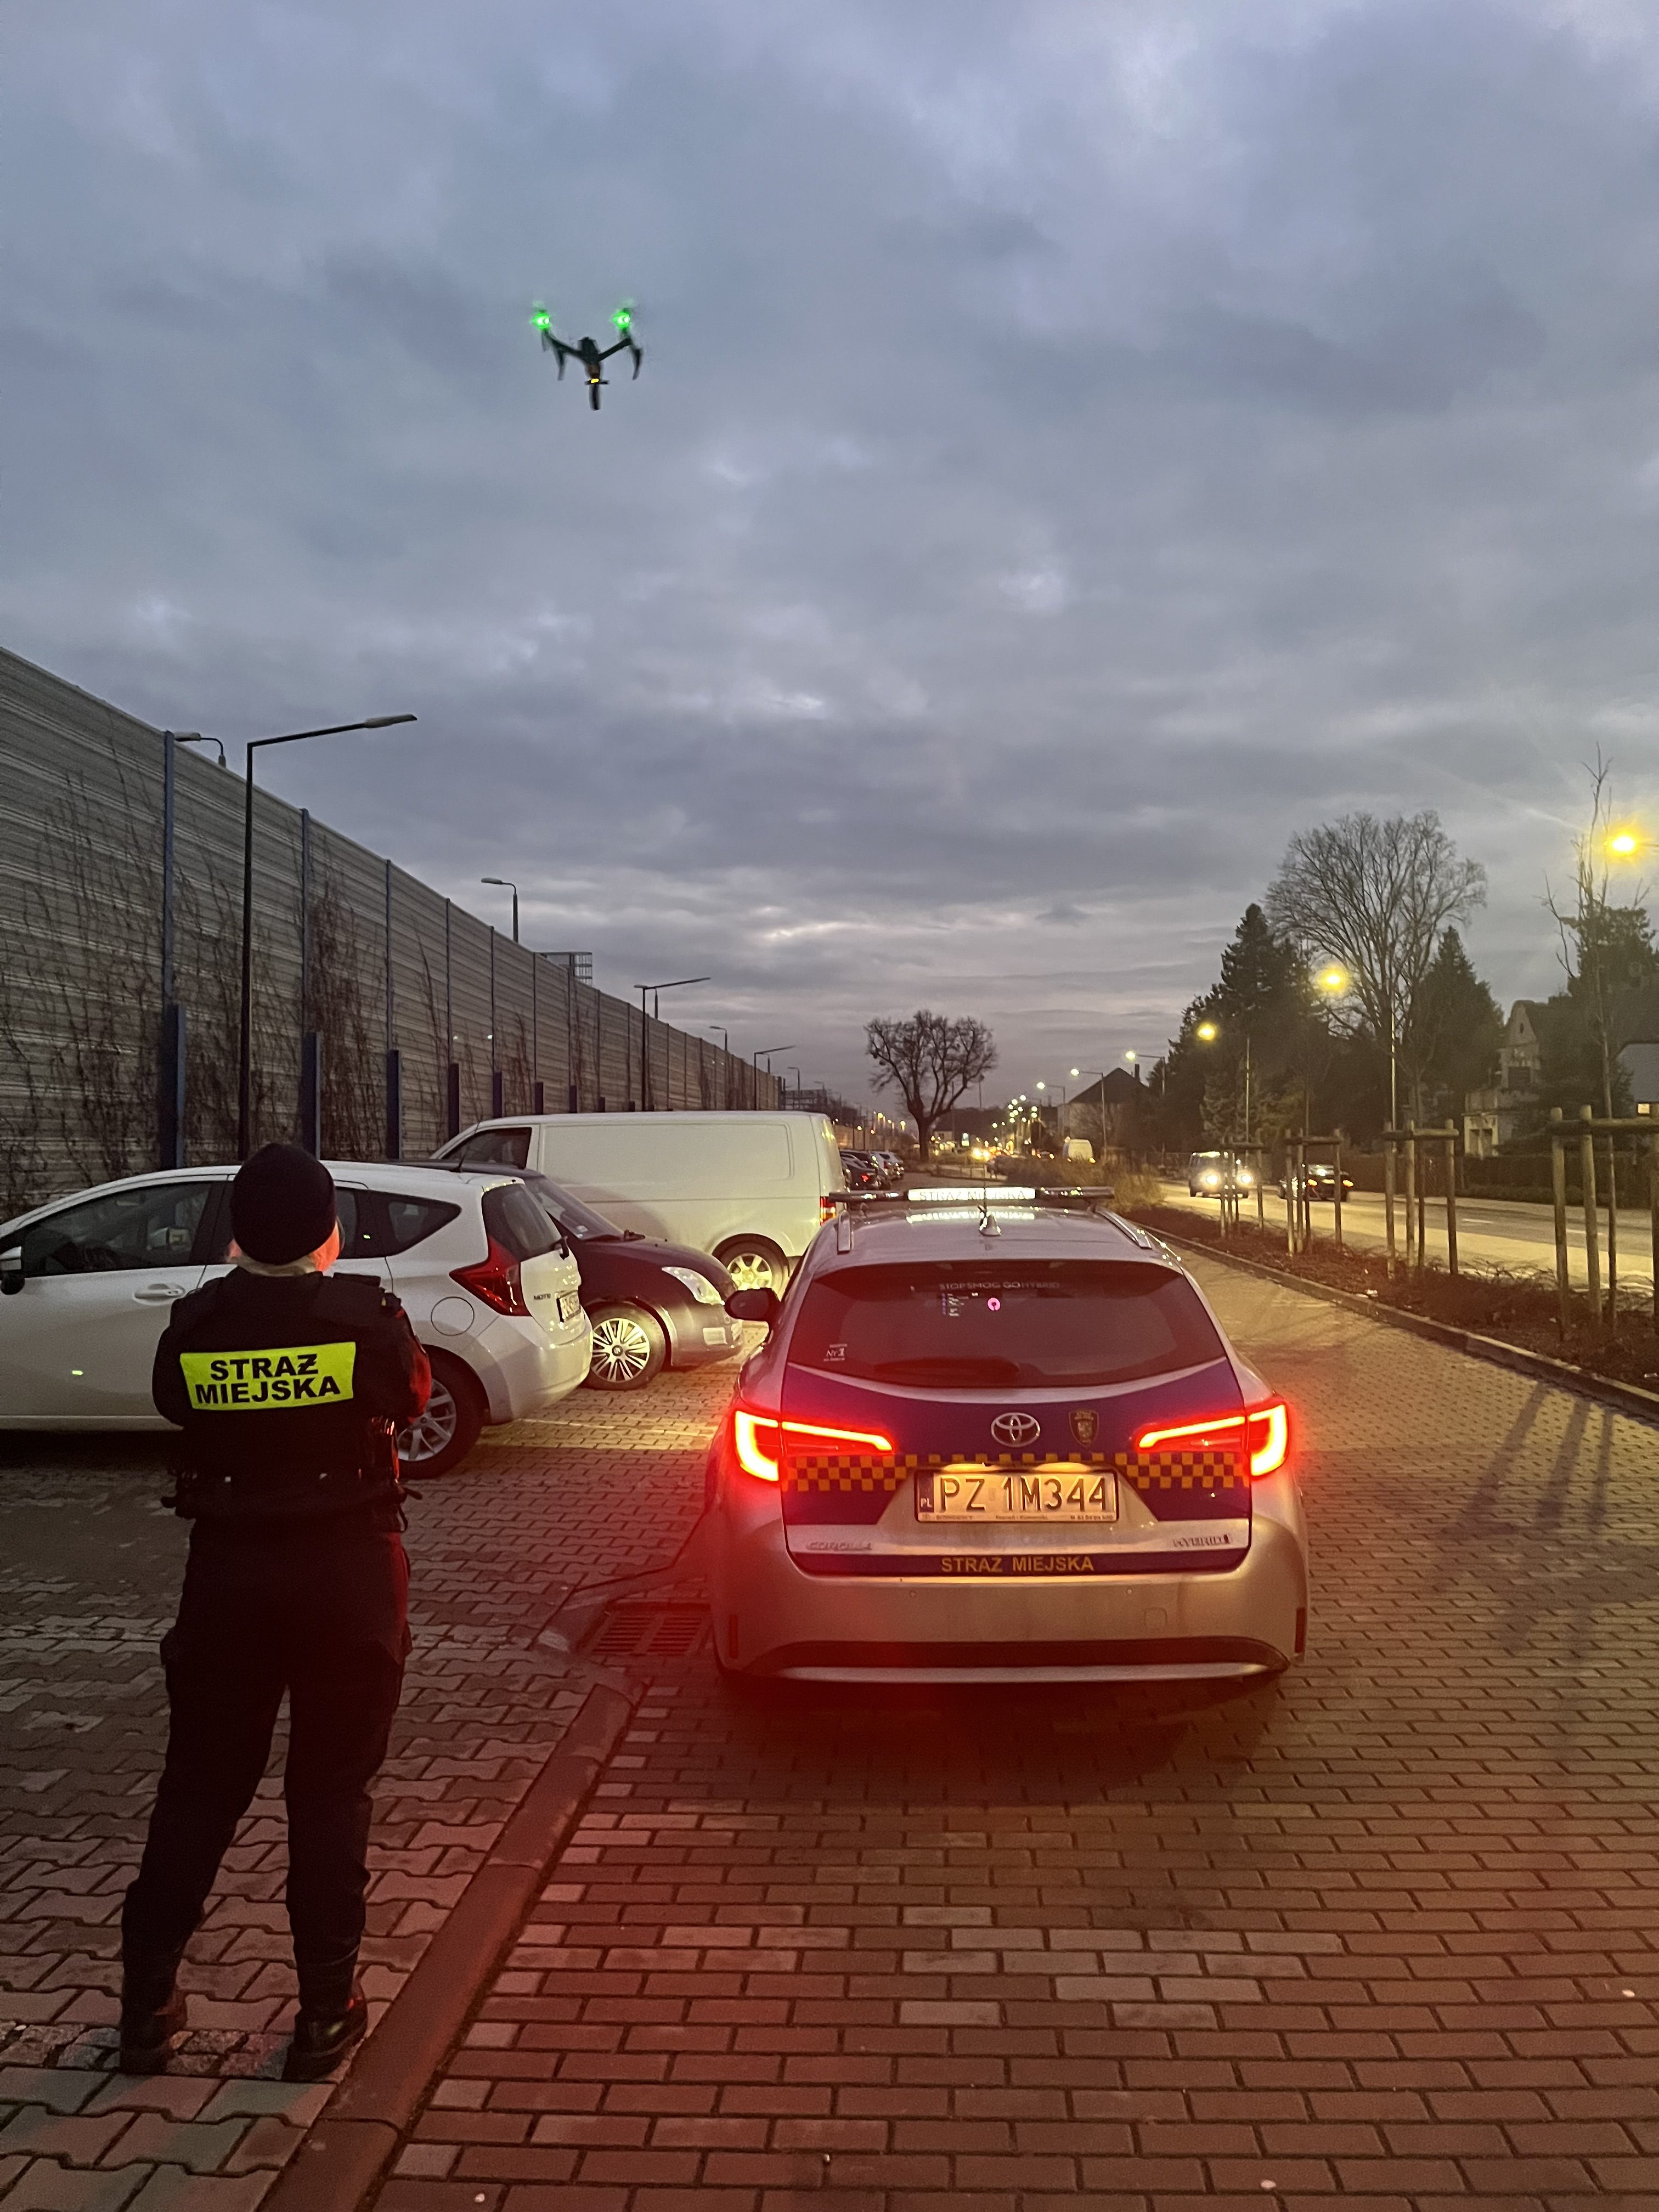 Zdjęcie przedstawia strażnika miejskiego przy radiowozie oraz wzbijający się w powietrze dron